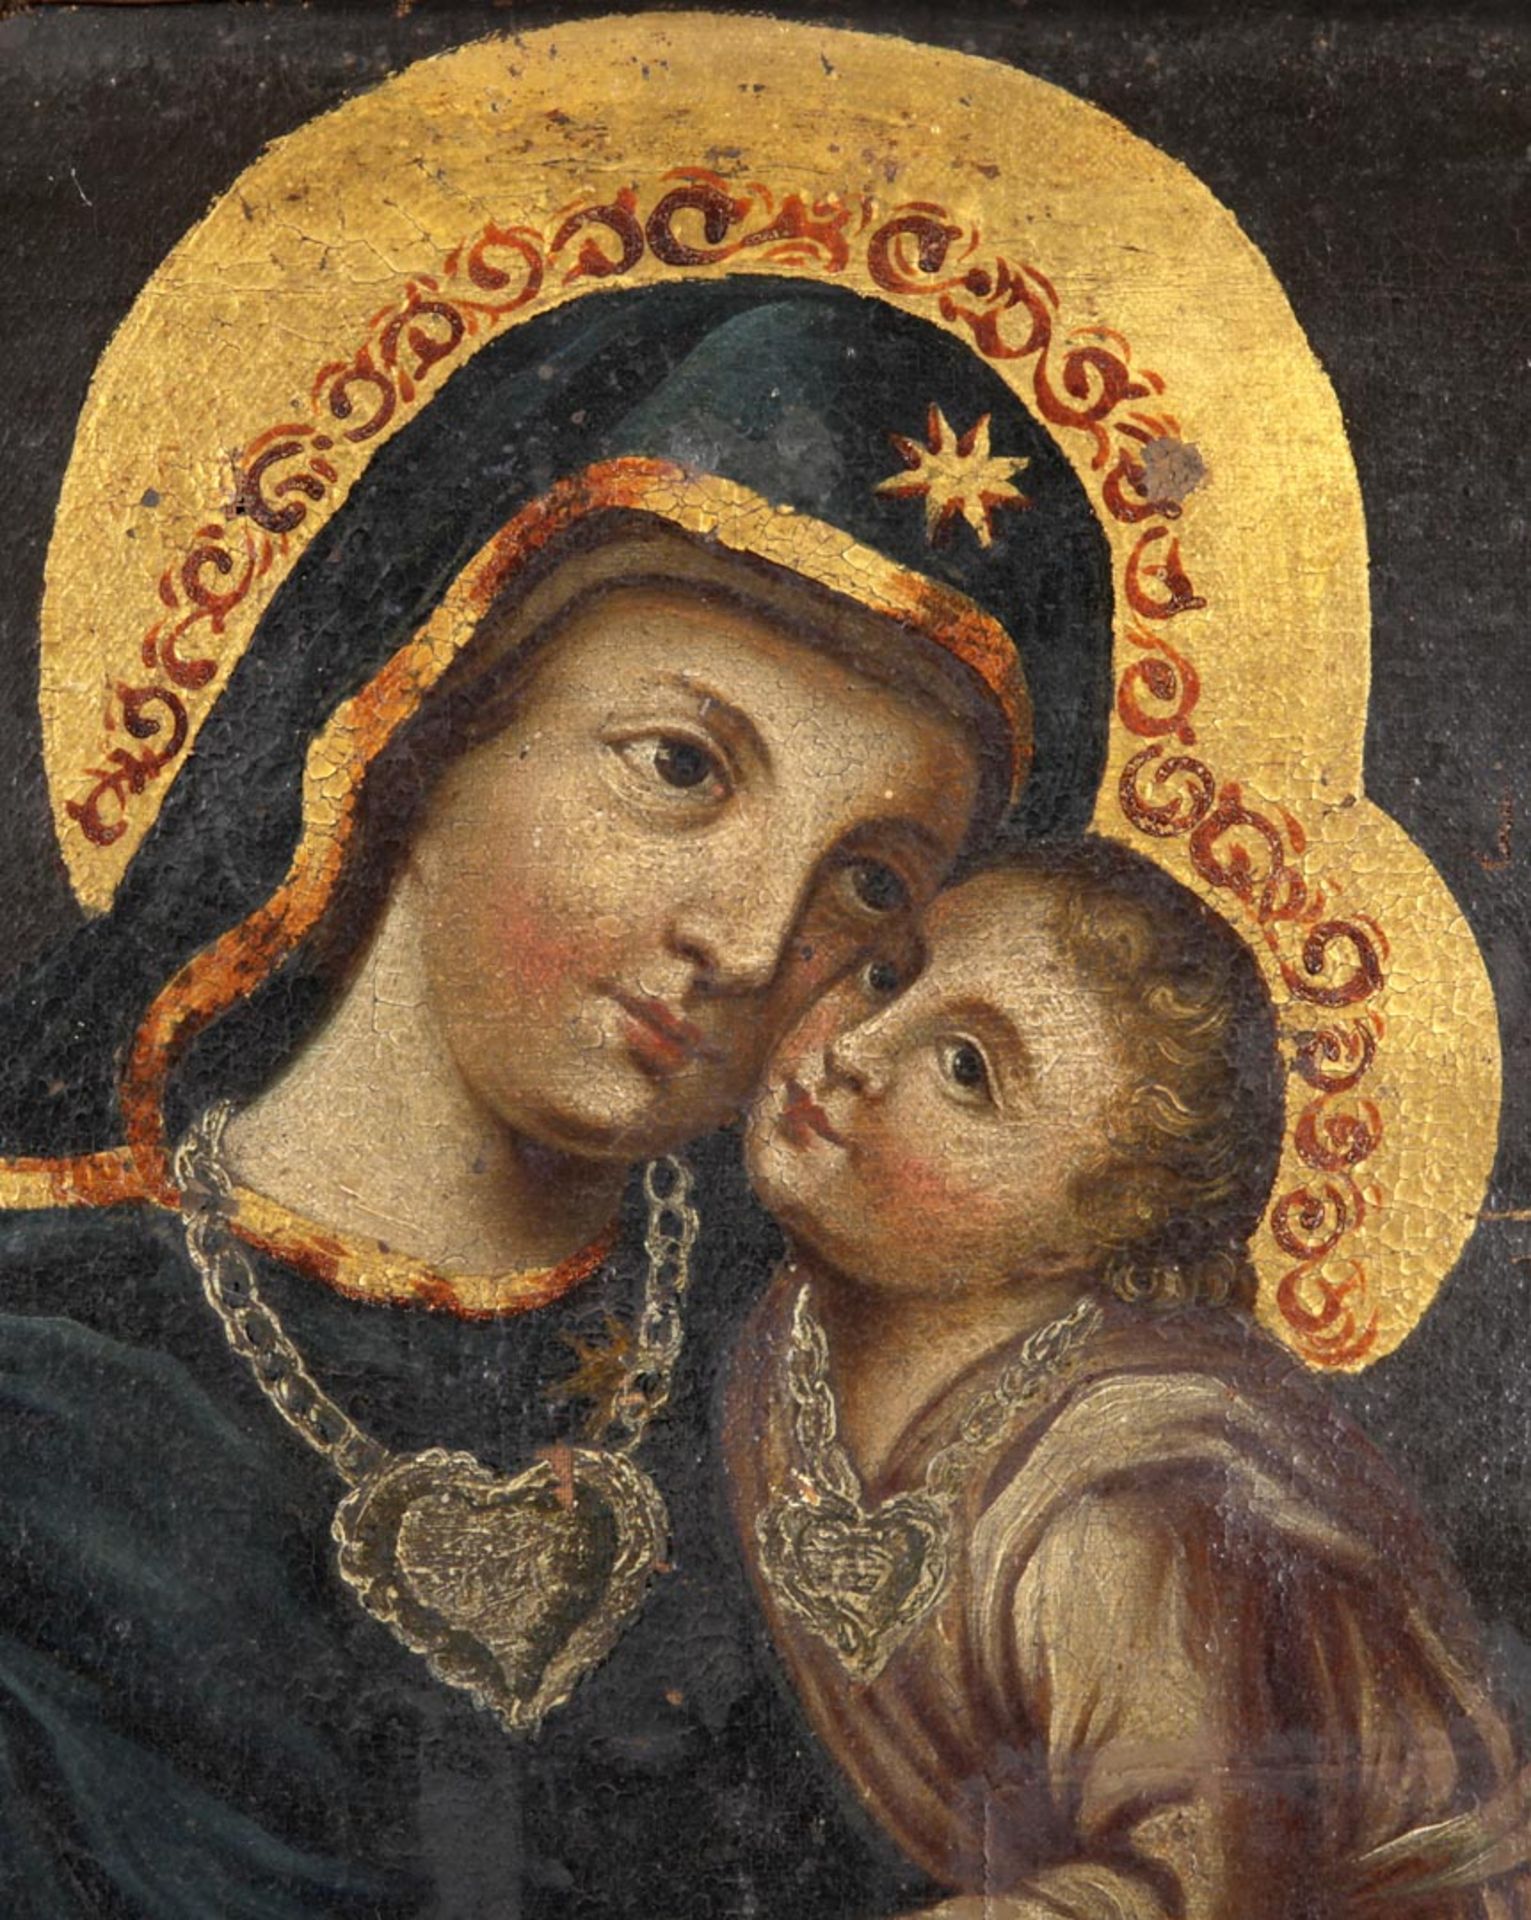 Mariendarstellung wohl Osteuropa, 19.Jh. Maria das Jesuskind auf dem Arm haltend.- Öl a. Lwd., - Bild 2 aus 2